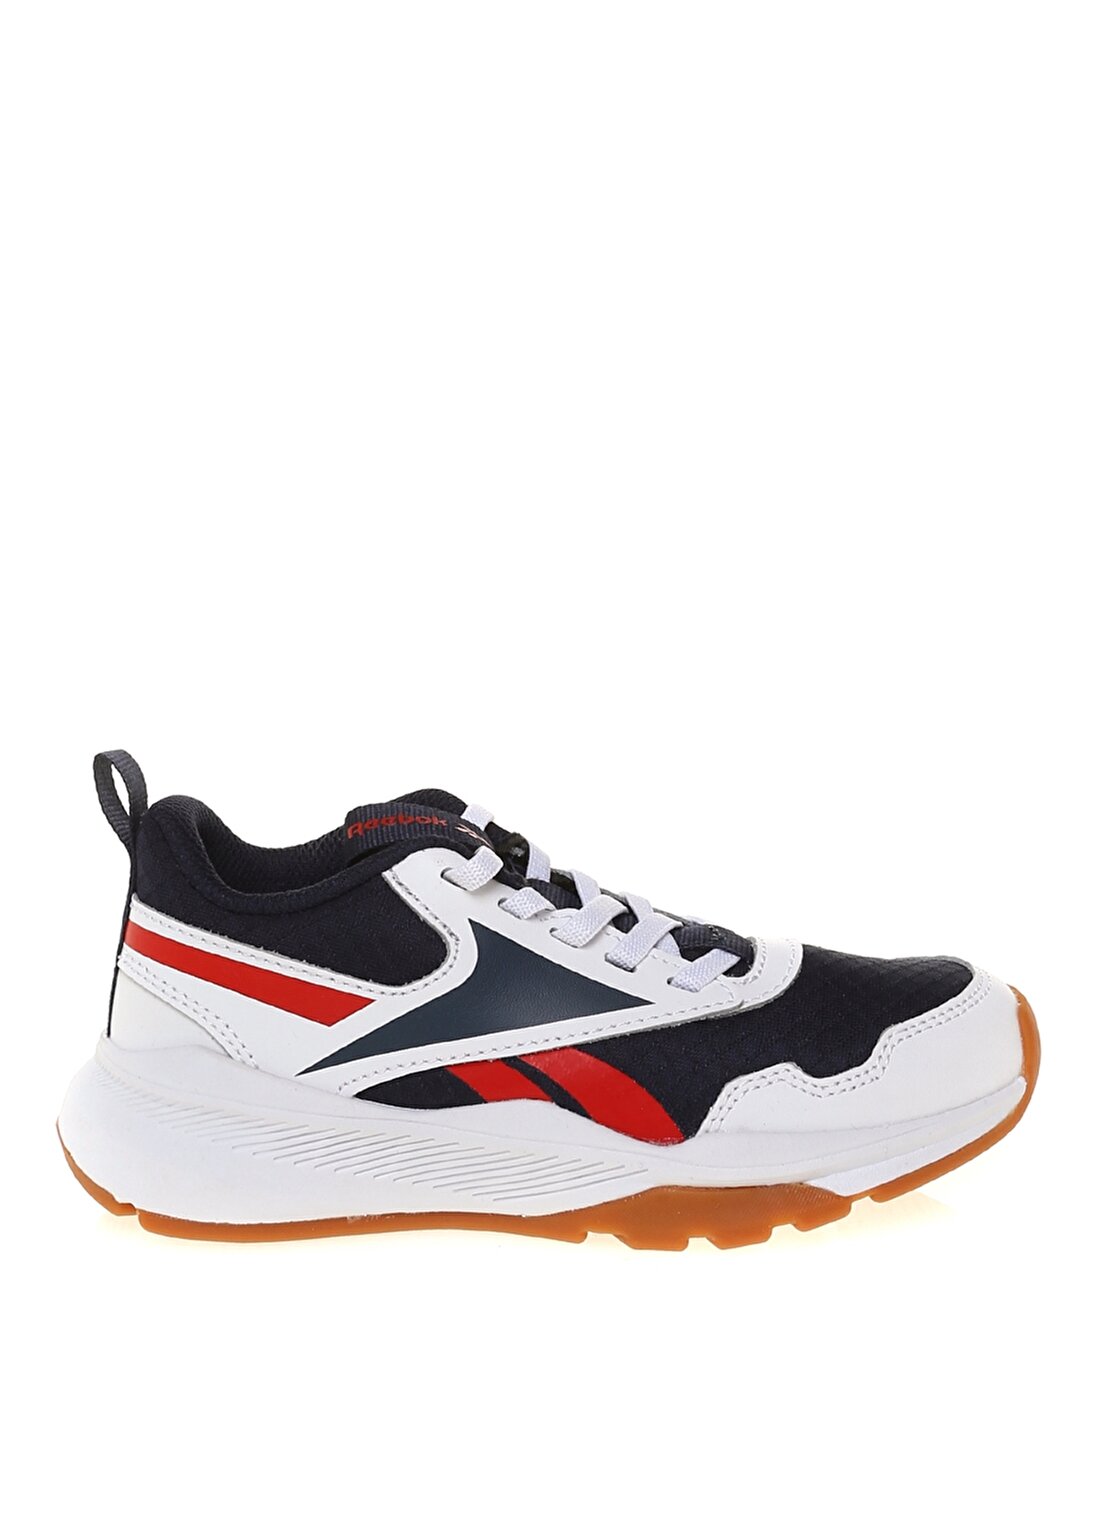 Reebok S42891 REEBOK XT SPRINTER 2.0 ALT Lacivert - Kırmızı - Beyaz Erkek Deri Yürüyüş Ayakkabısı